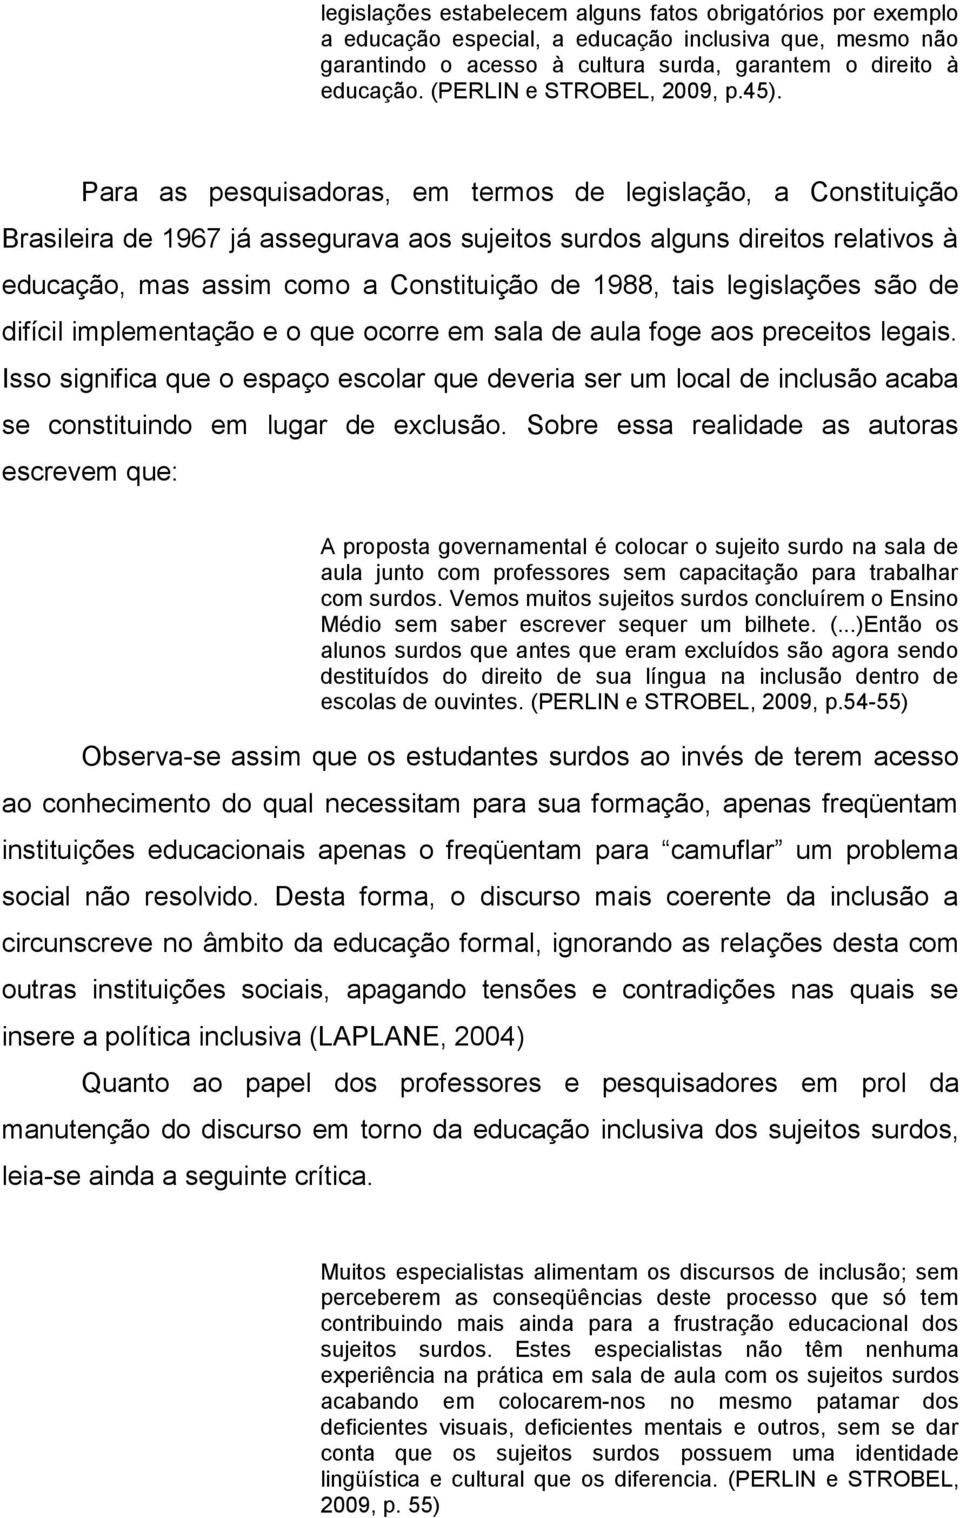 Para as pesquisadoras, em termos de legislação, a Constituição Brasileira de 1967 já assegurava aos sujeitos surdos alguns direitos relativos à educação, mas assim como a Constituição de 1988, tais